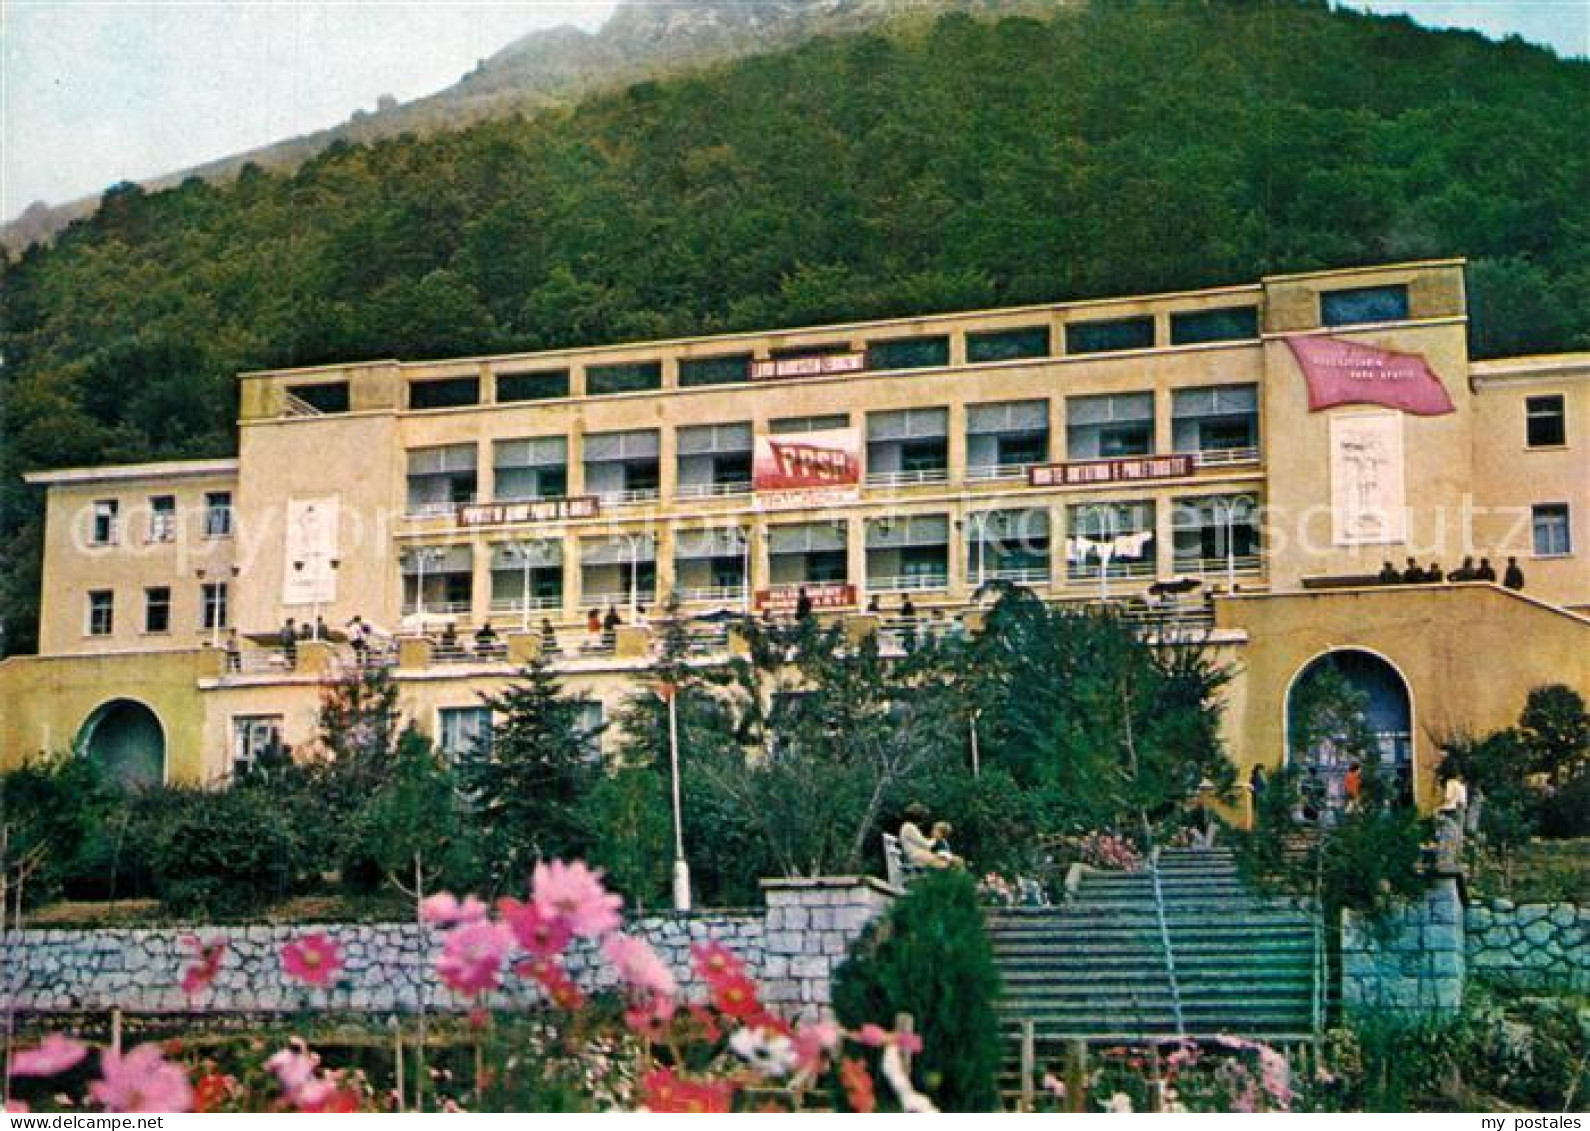 73599684 Dajt Shtepia E Pushimit Ferienhaus Hotel  - Albanie